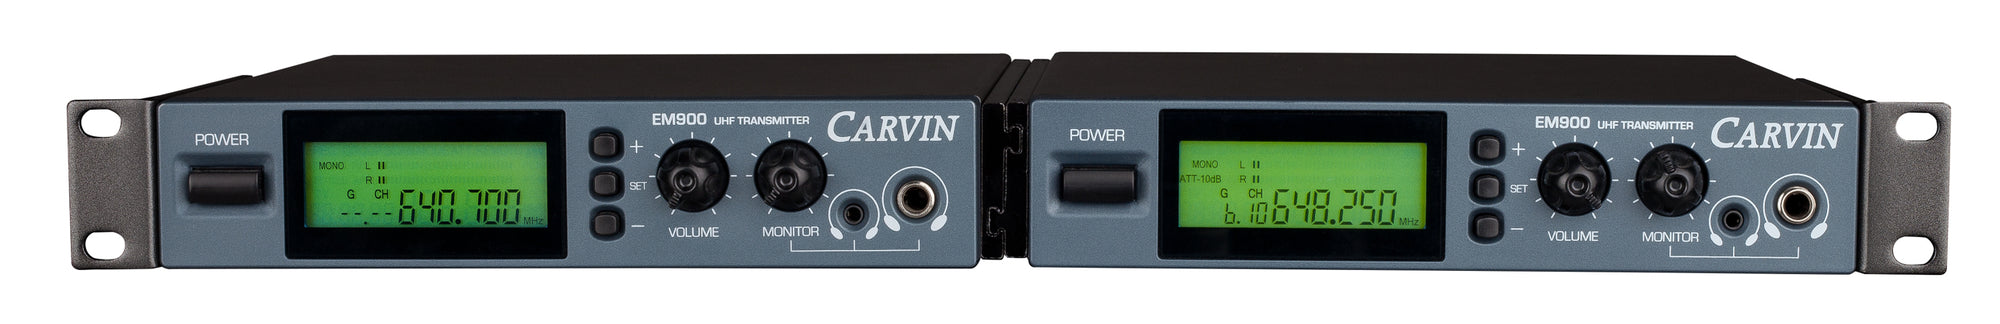 carvin em900 1U dual rack mount kit for 2 EM900 in ear monitor receivers